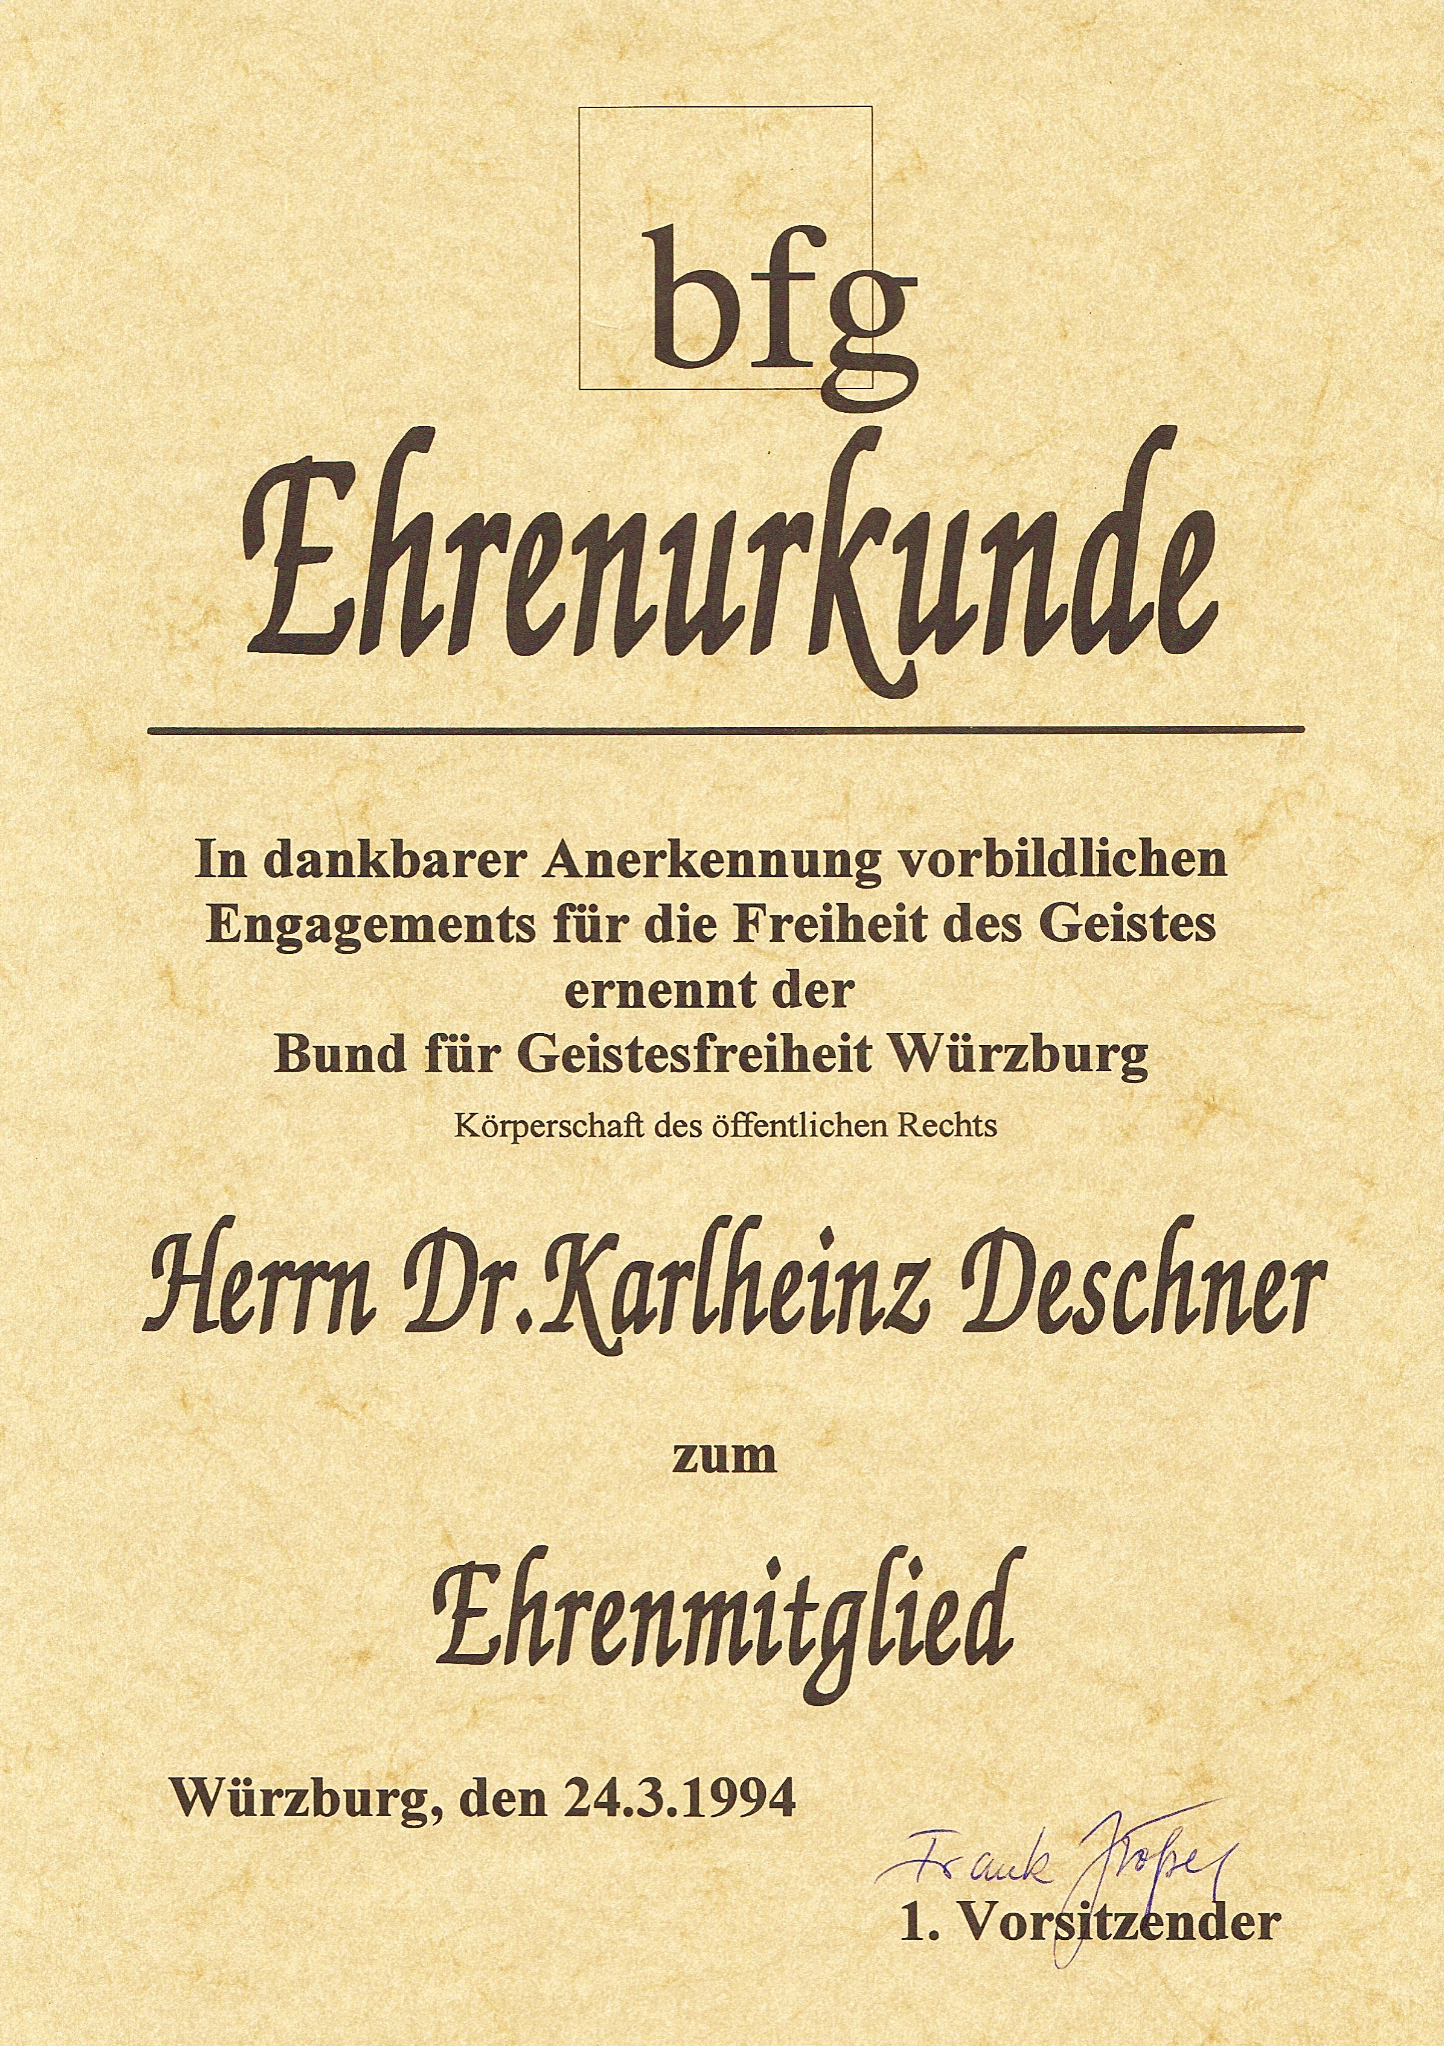 Urkunde zur Ehrenmitgliedschaft im bfg Würzburg